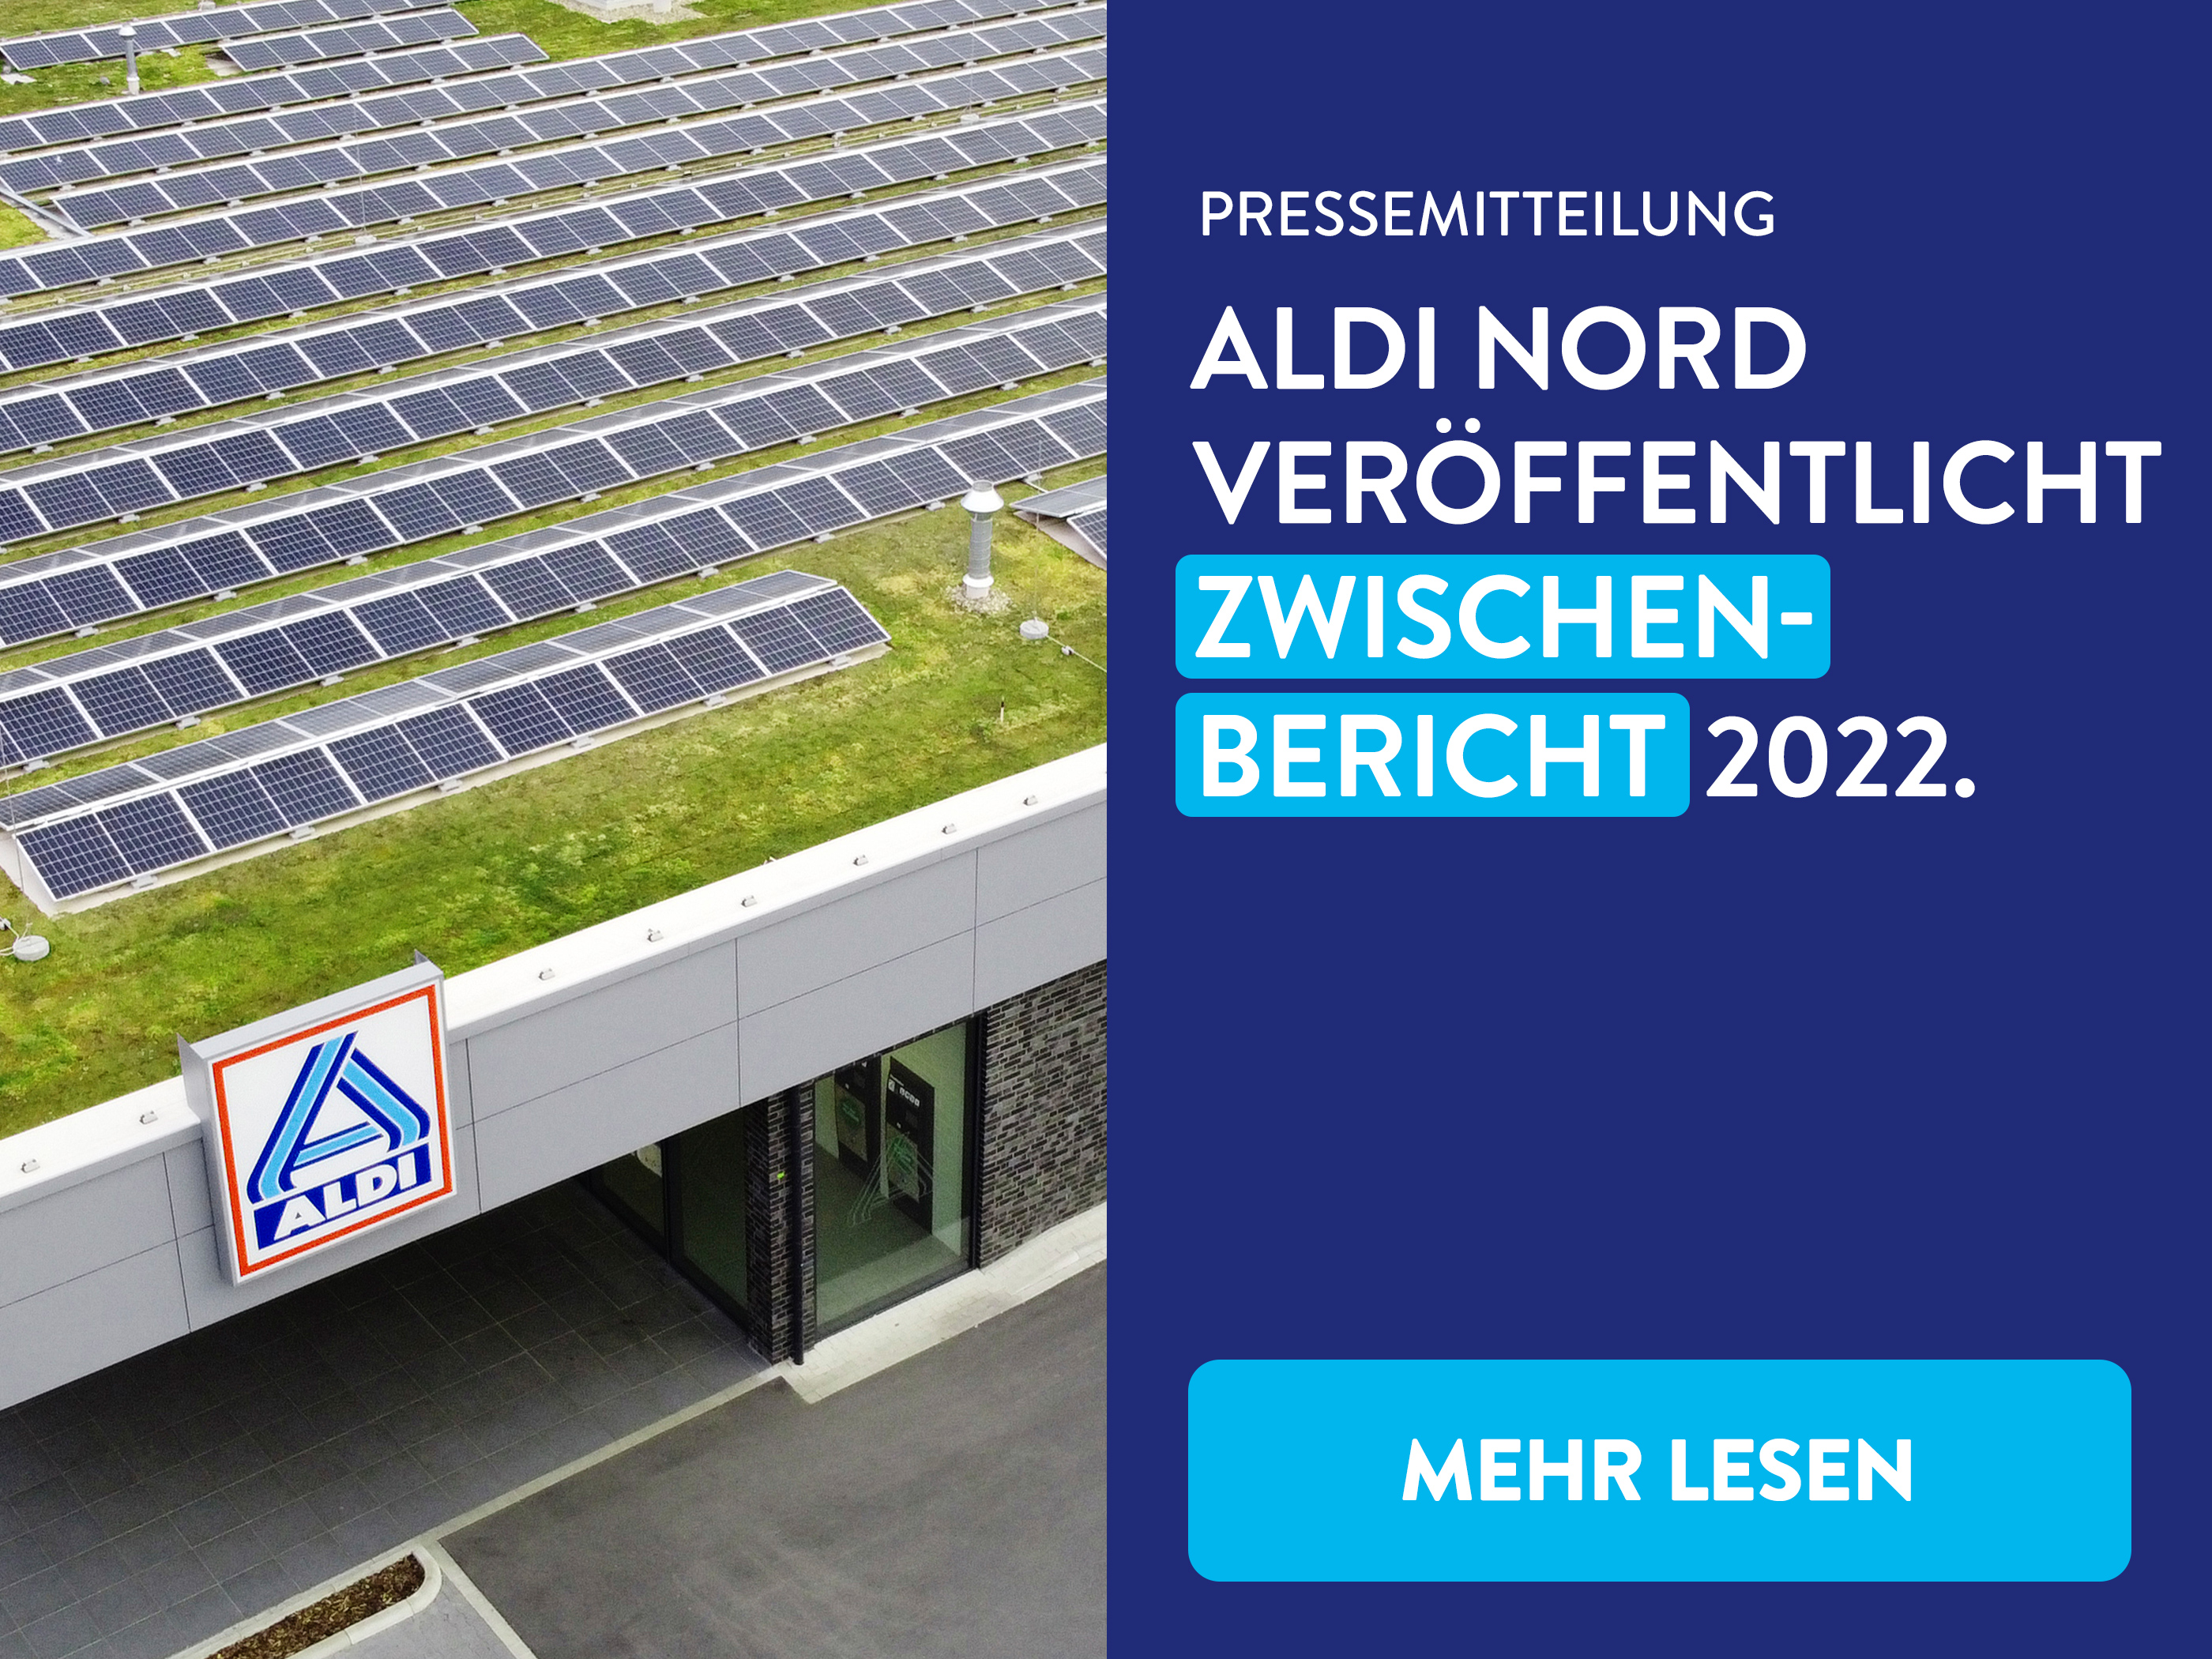 ALDI Nord setzt auf erneuerbare Energien und Kreislaufwirtschaft